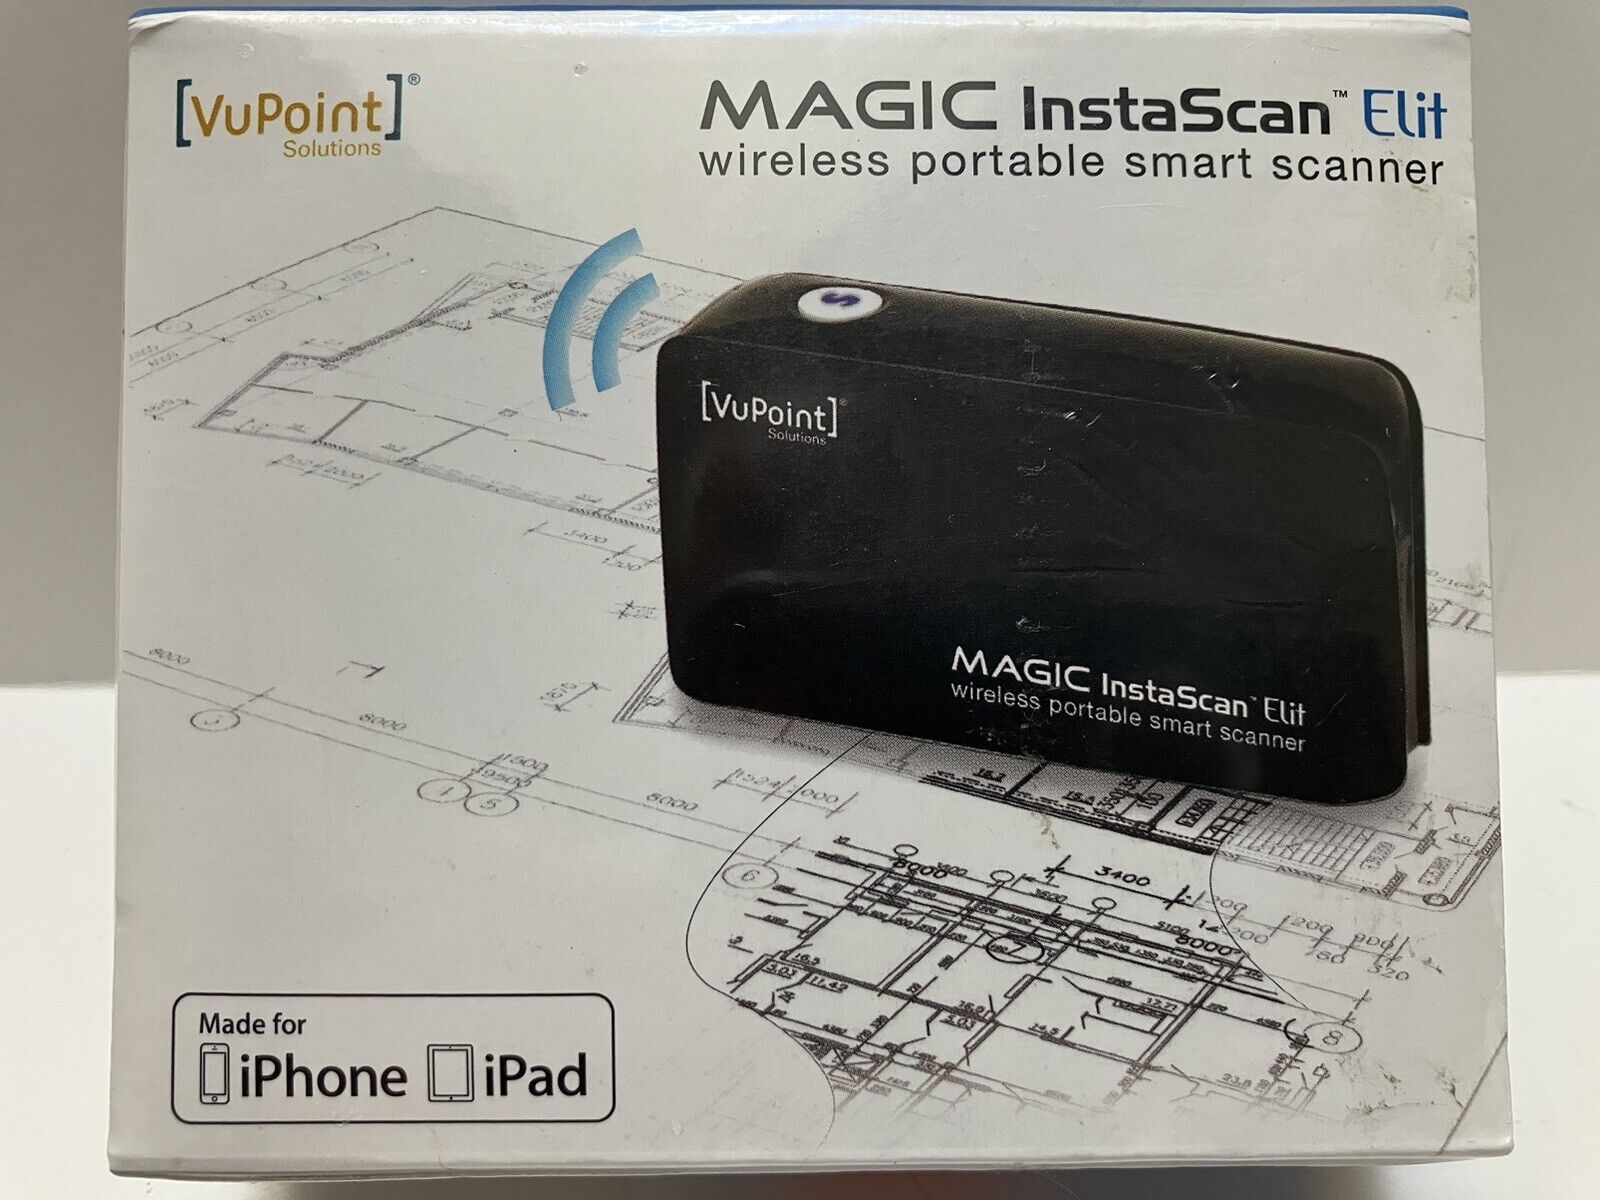 New Vupoint Magic InstaScan Elit Wireless Smart Scanner -Brand New in Sealed Pkg